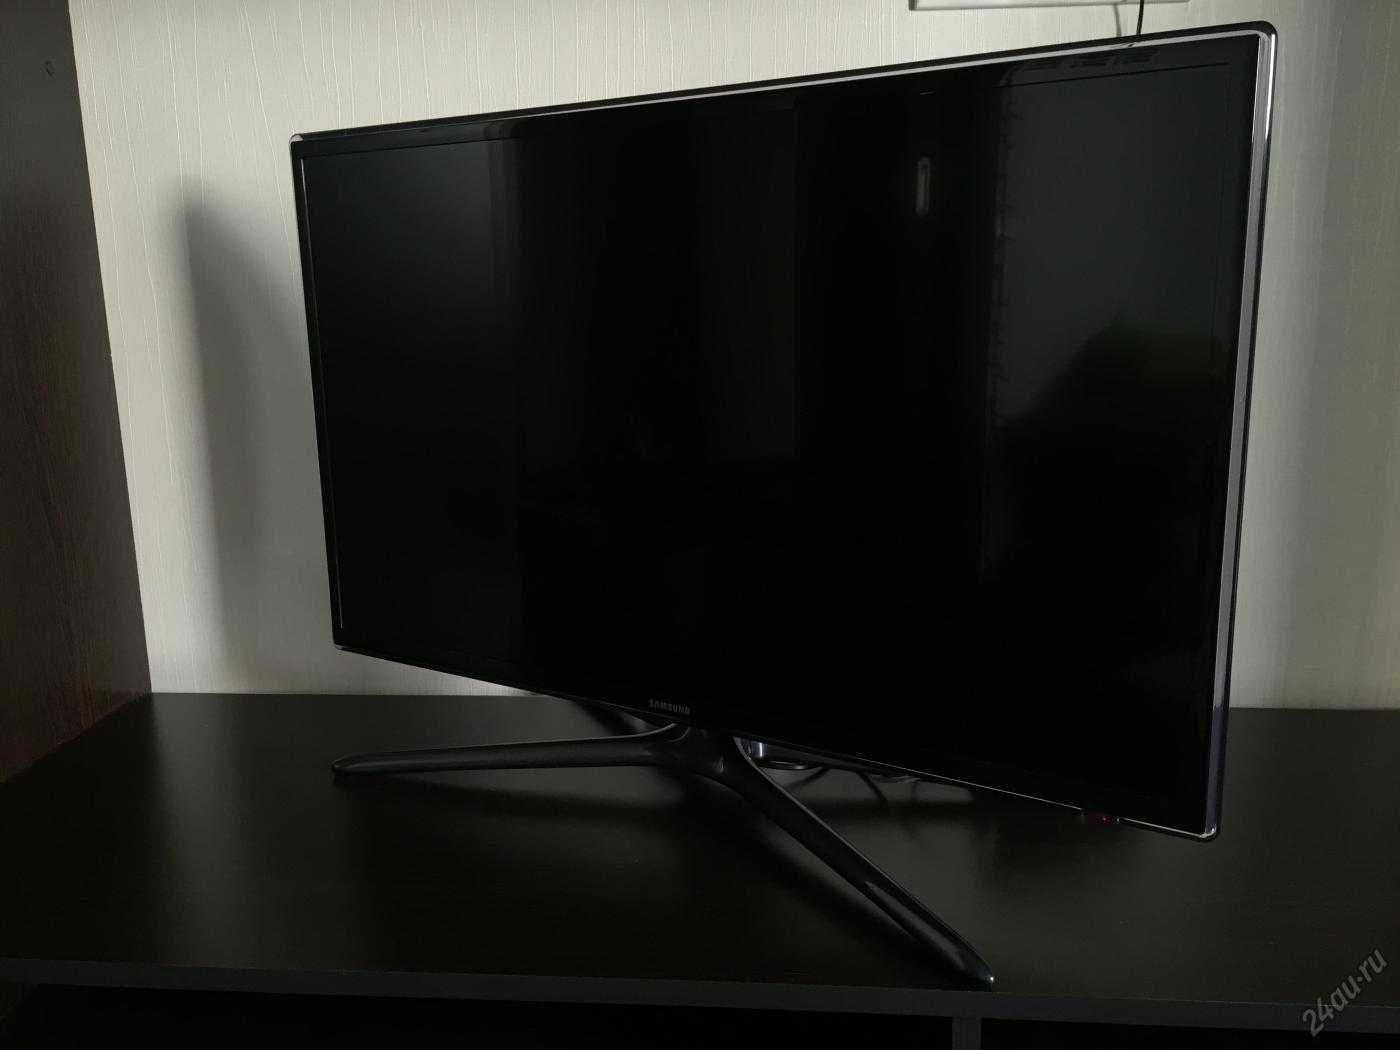 Жк телевизор 32" samsung ue32h6400 — купить, цена и характеристики, отзывы